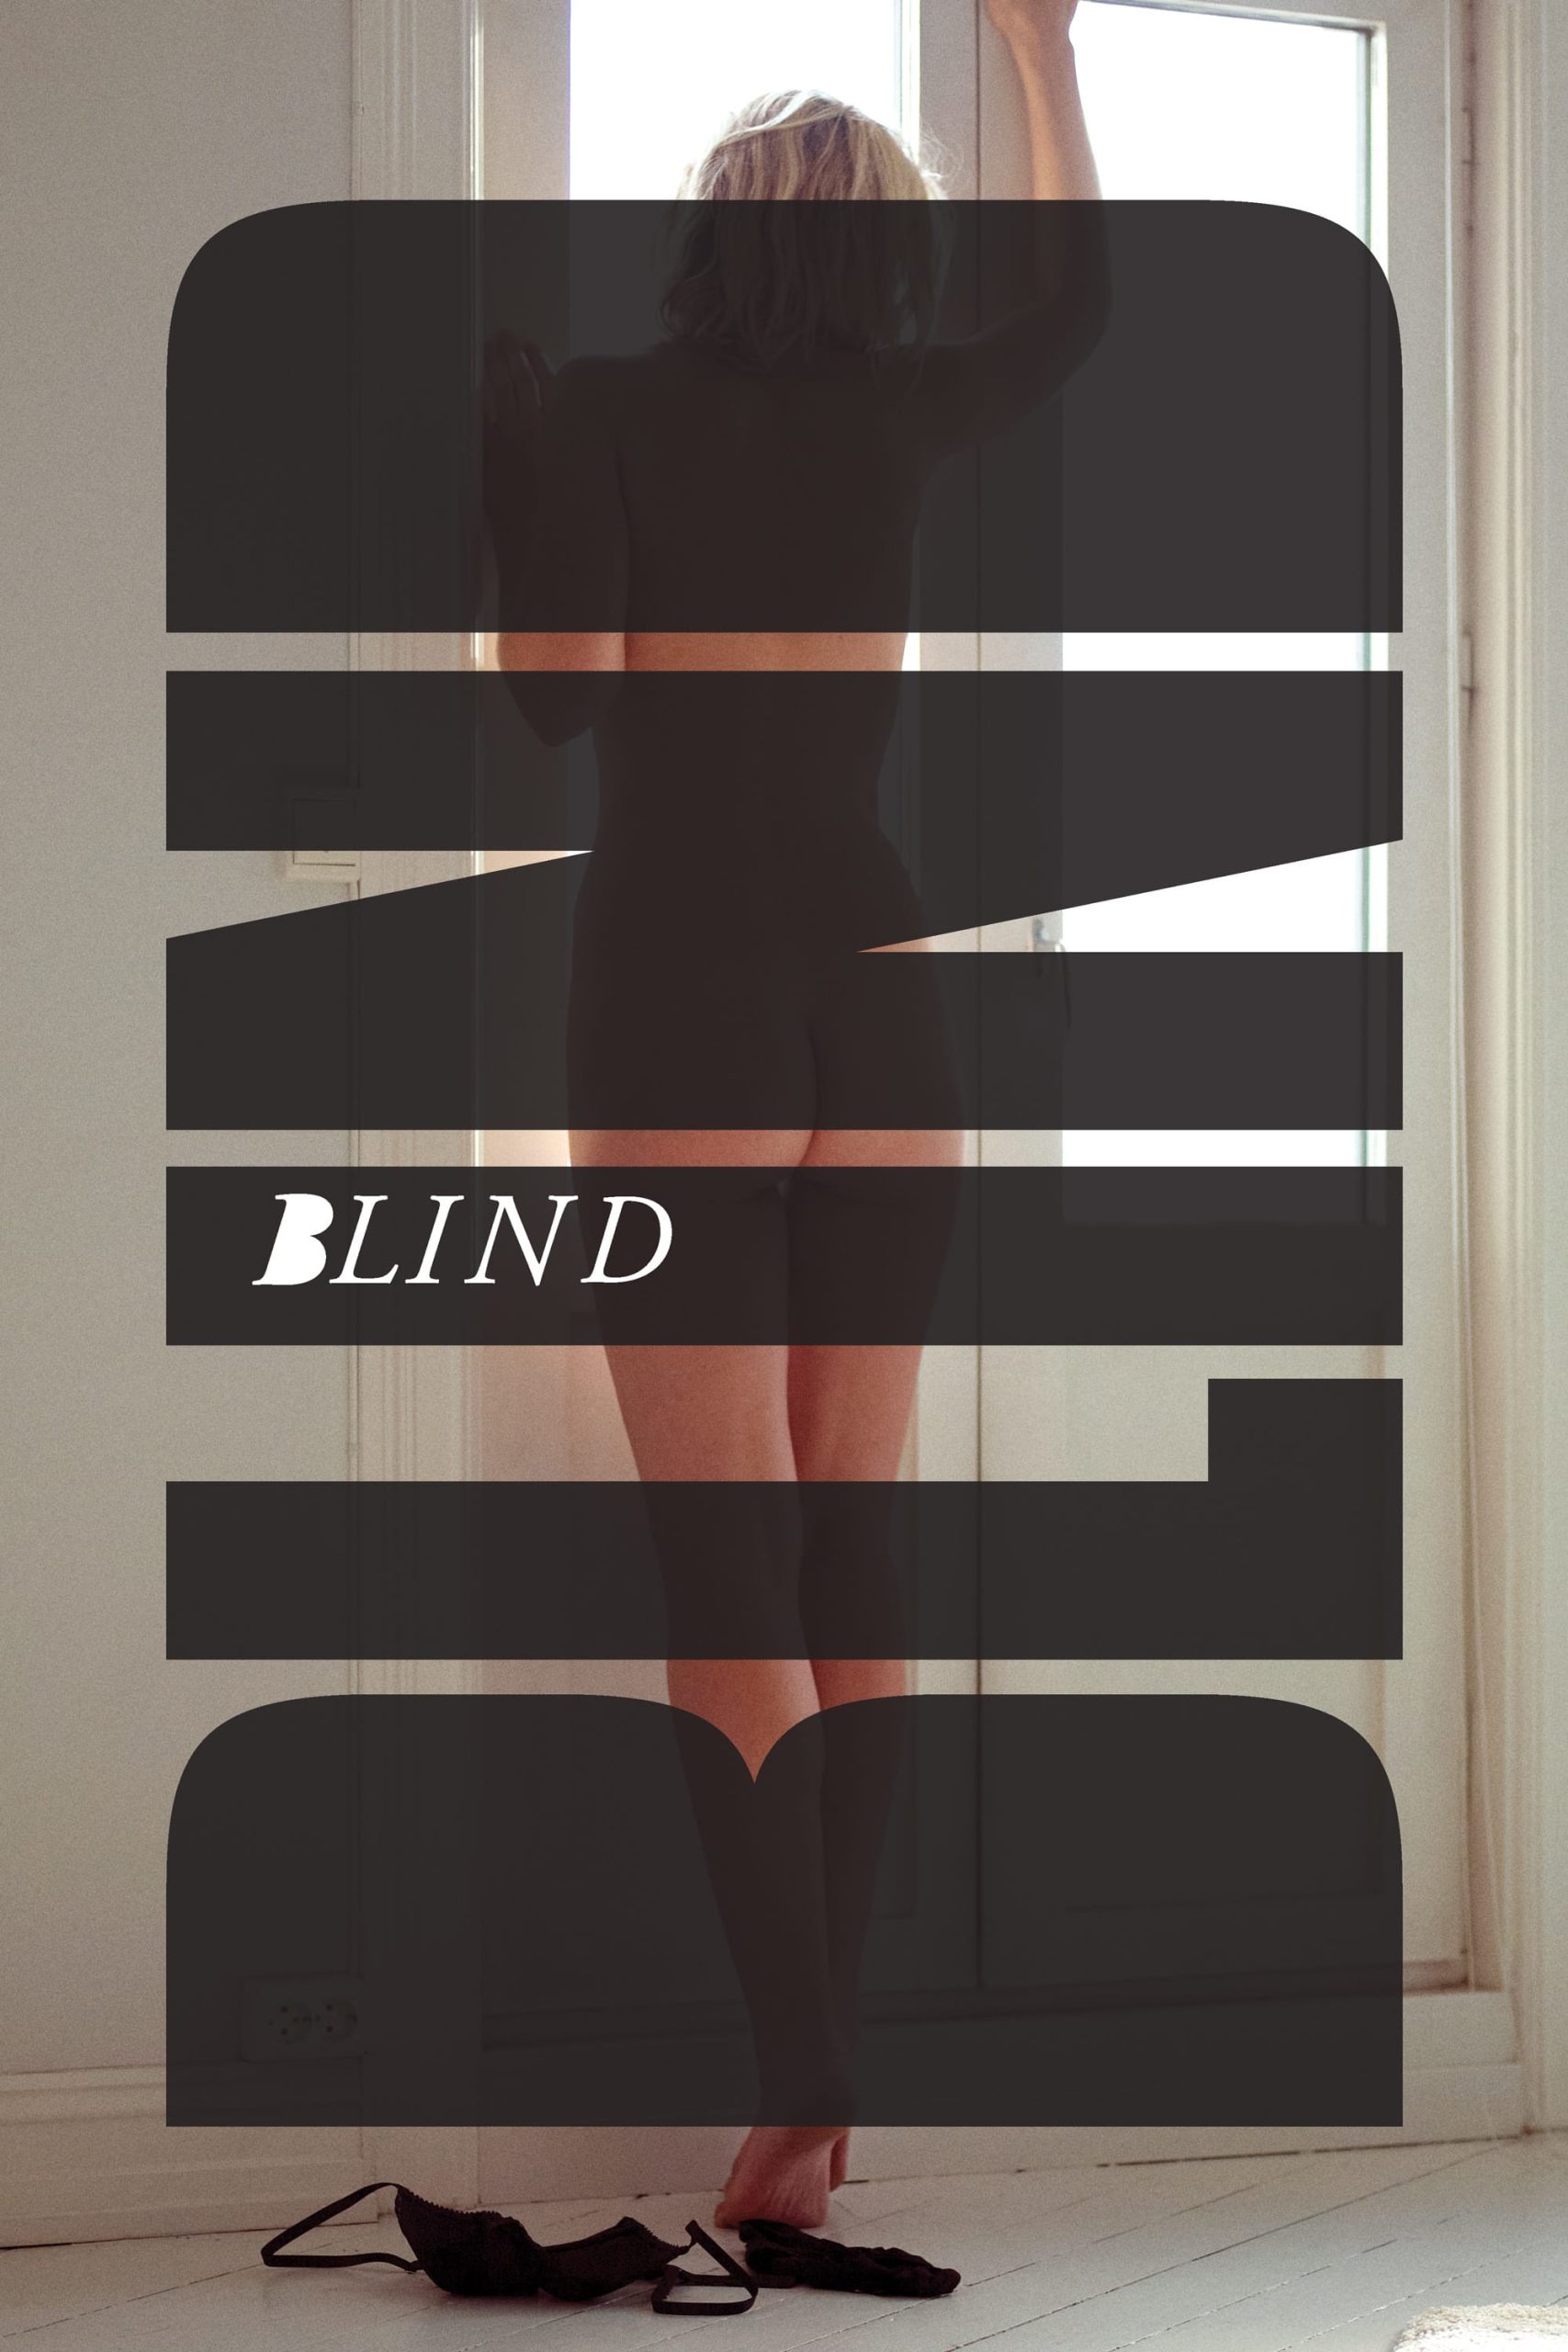 Blind [Sub-ITA] (2014)